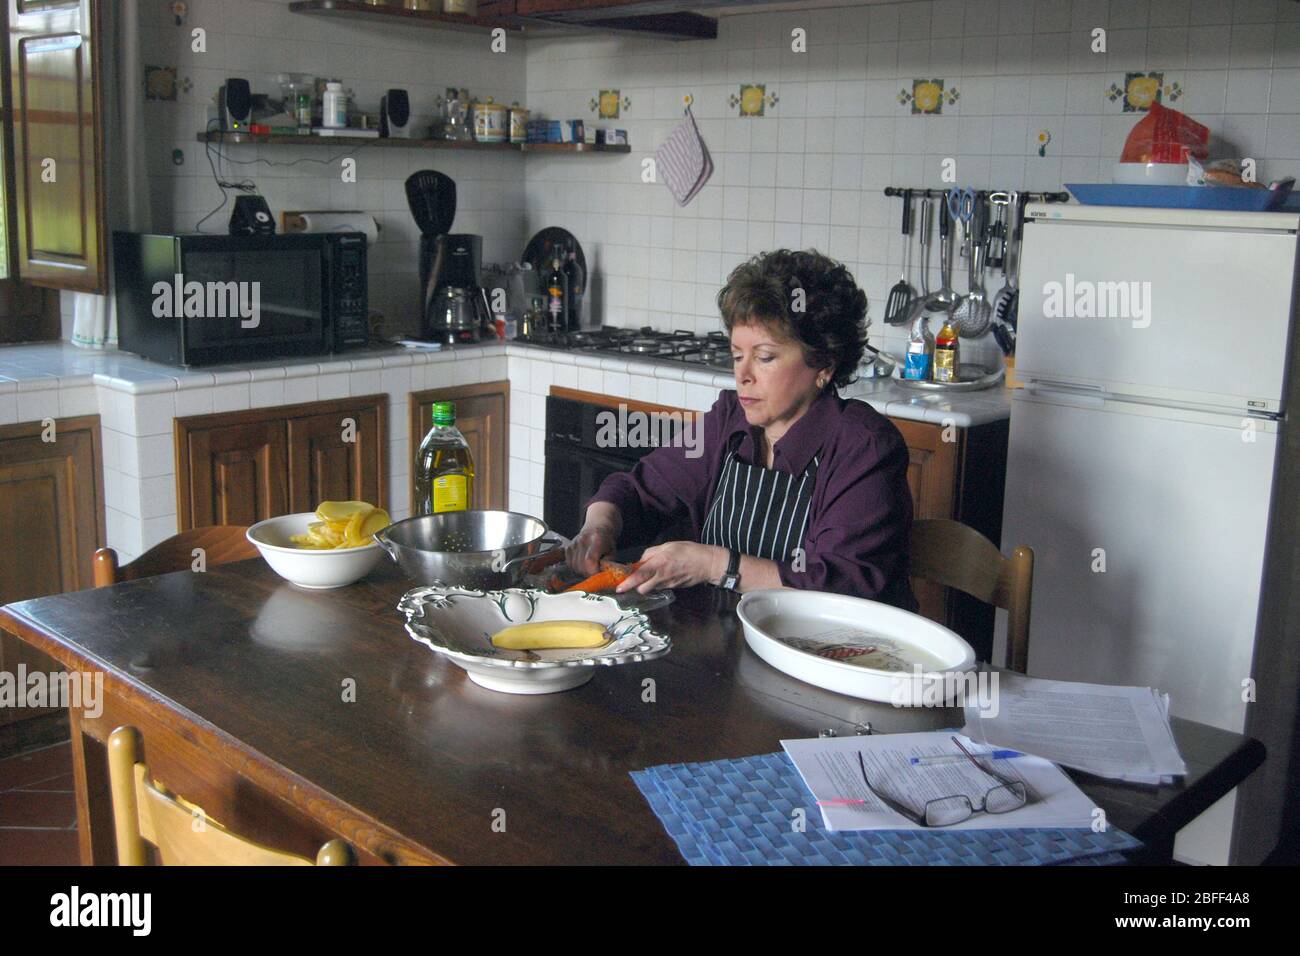 Una mujer americana de mediana edad que prepara el almuerzo en una villa alquilada en Torrita di Sienna, en la región toscana de Italia. Foto de stock